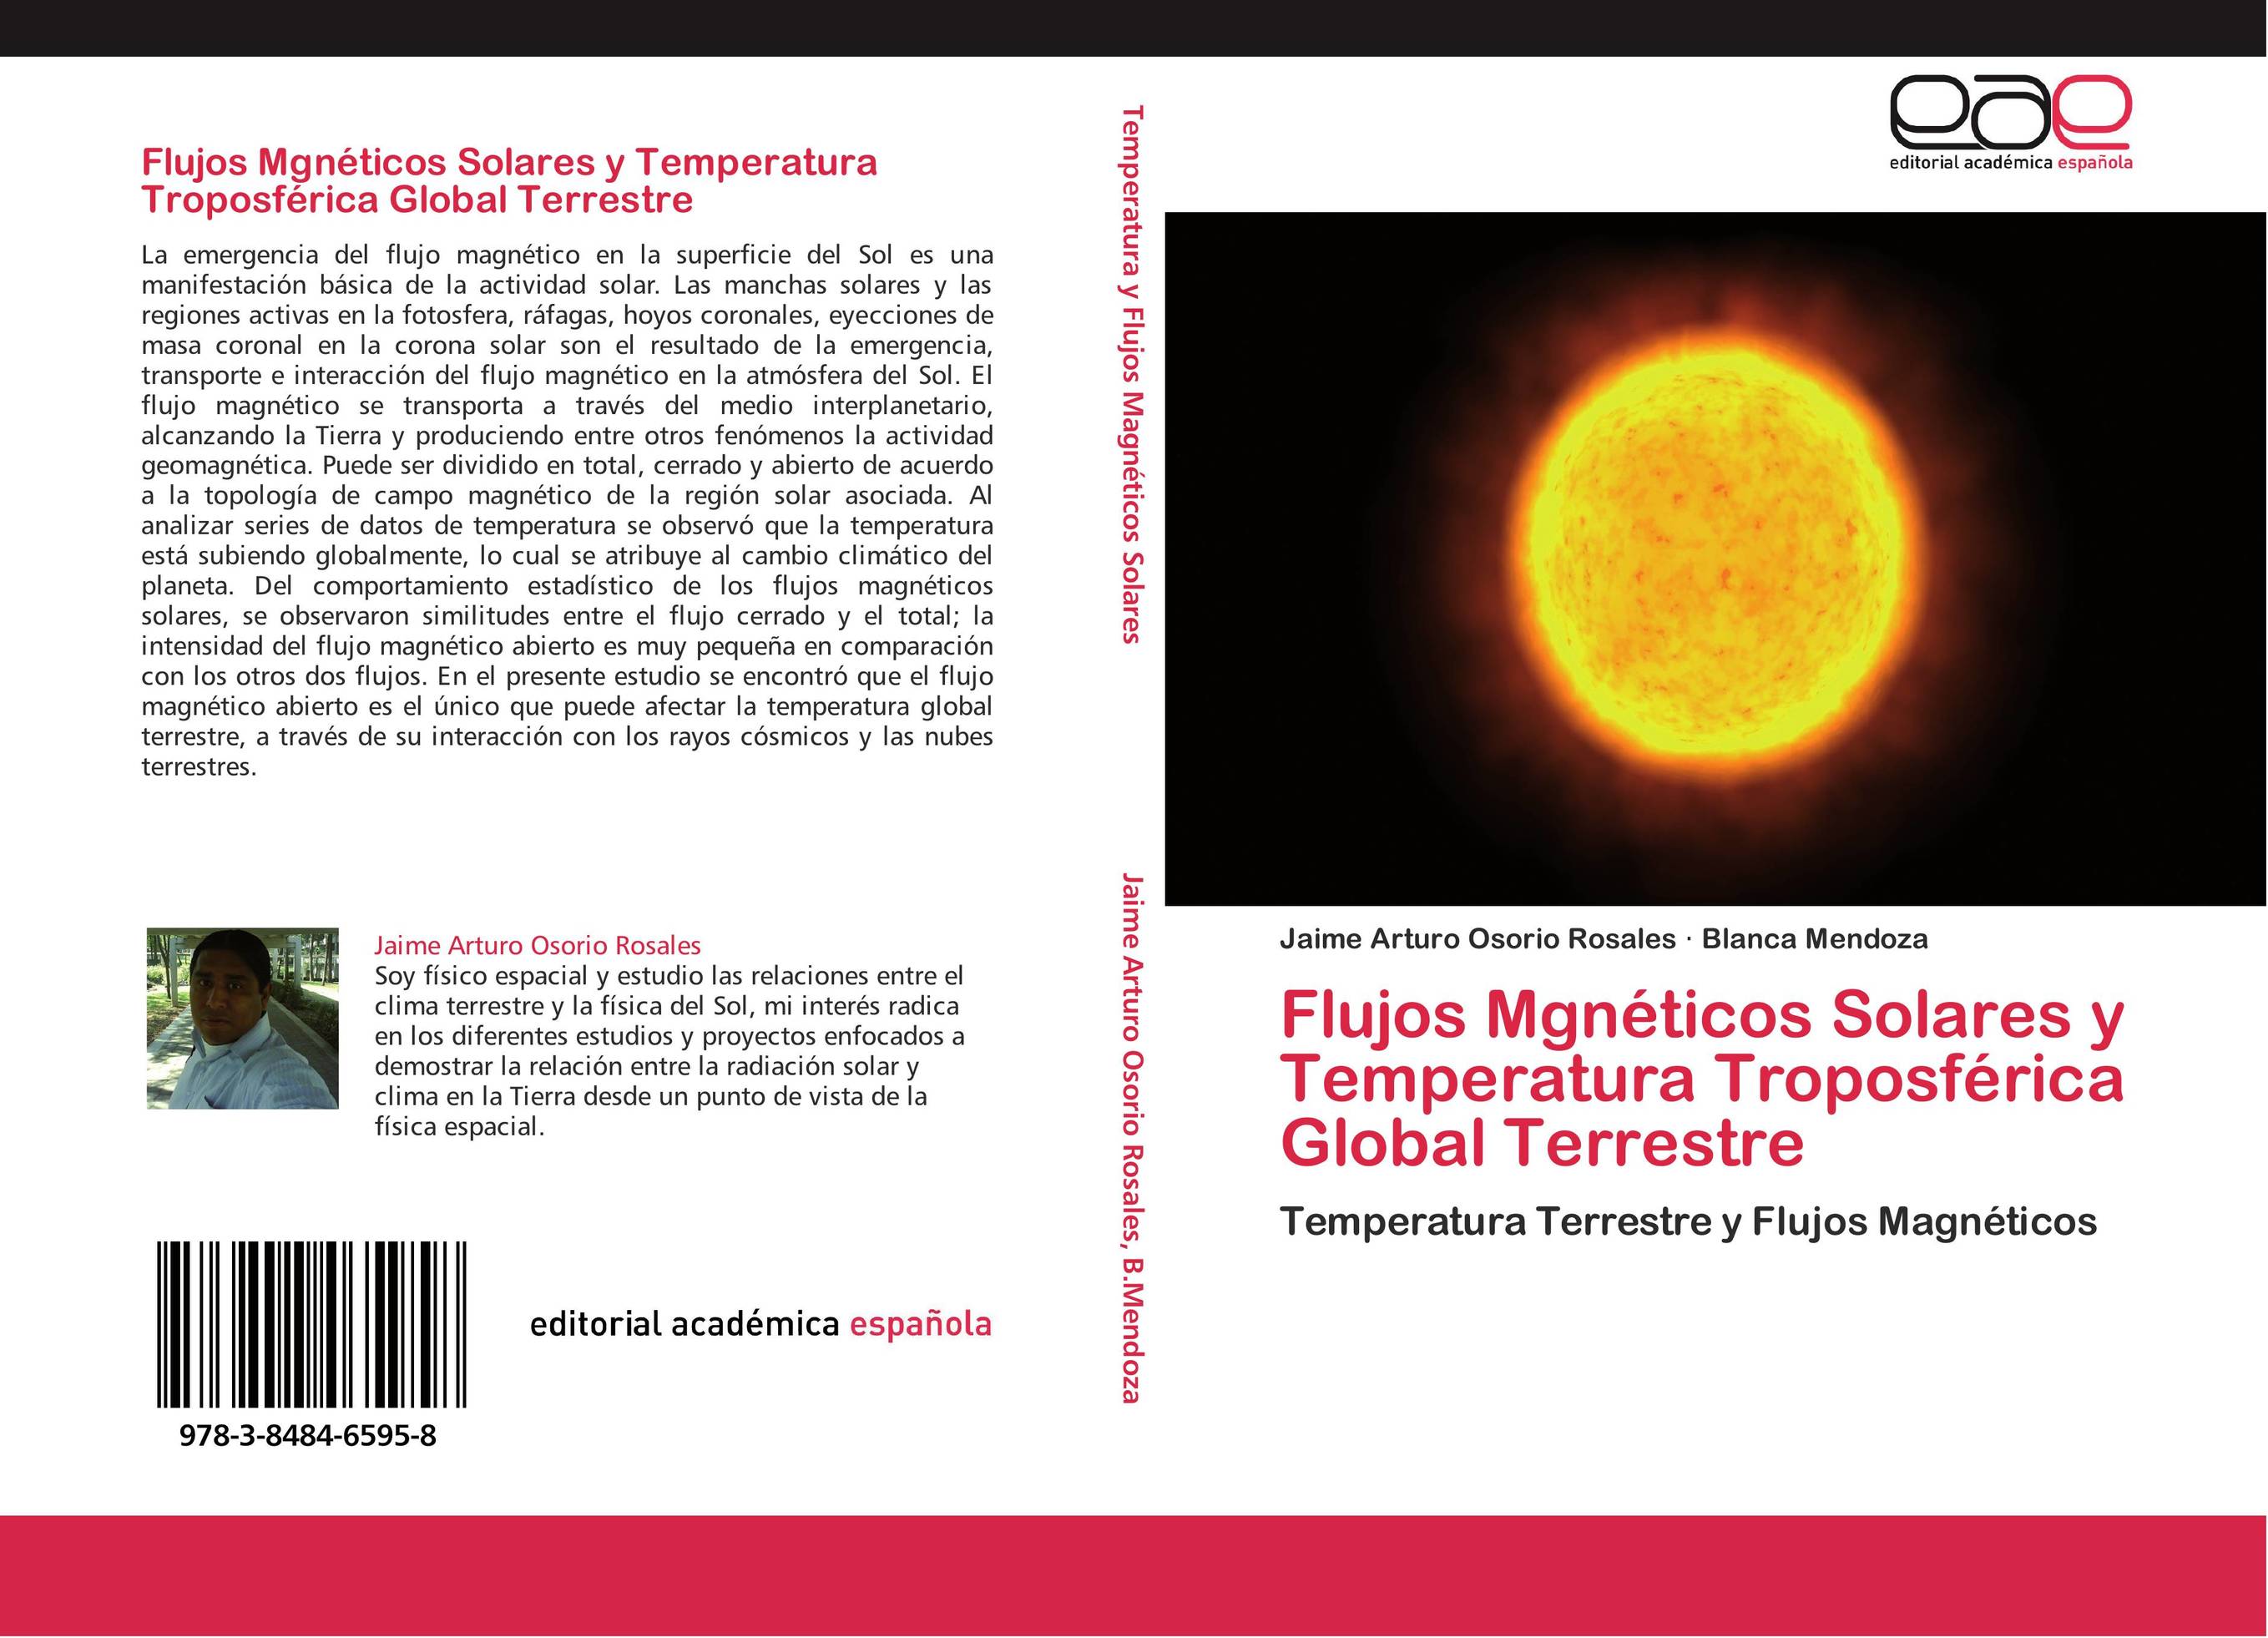 Flujos Mgnéticos Solares y Temperatura Troposférica Global Terrestre